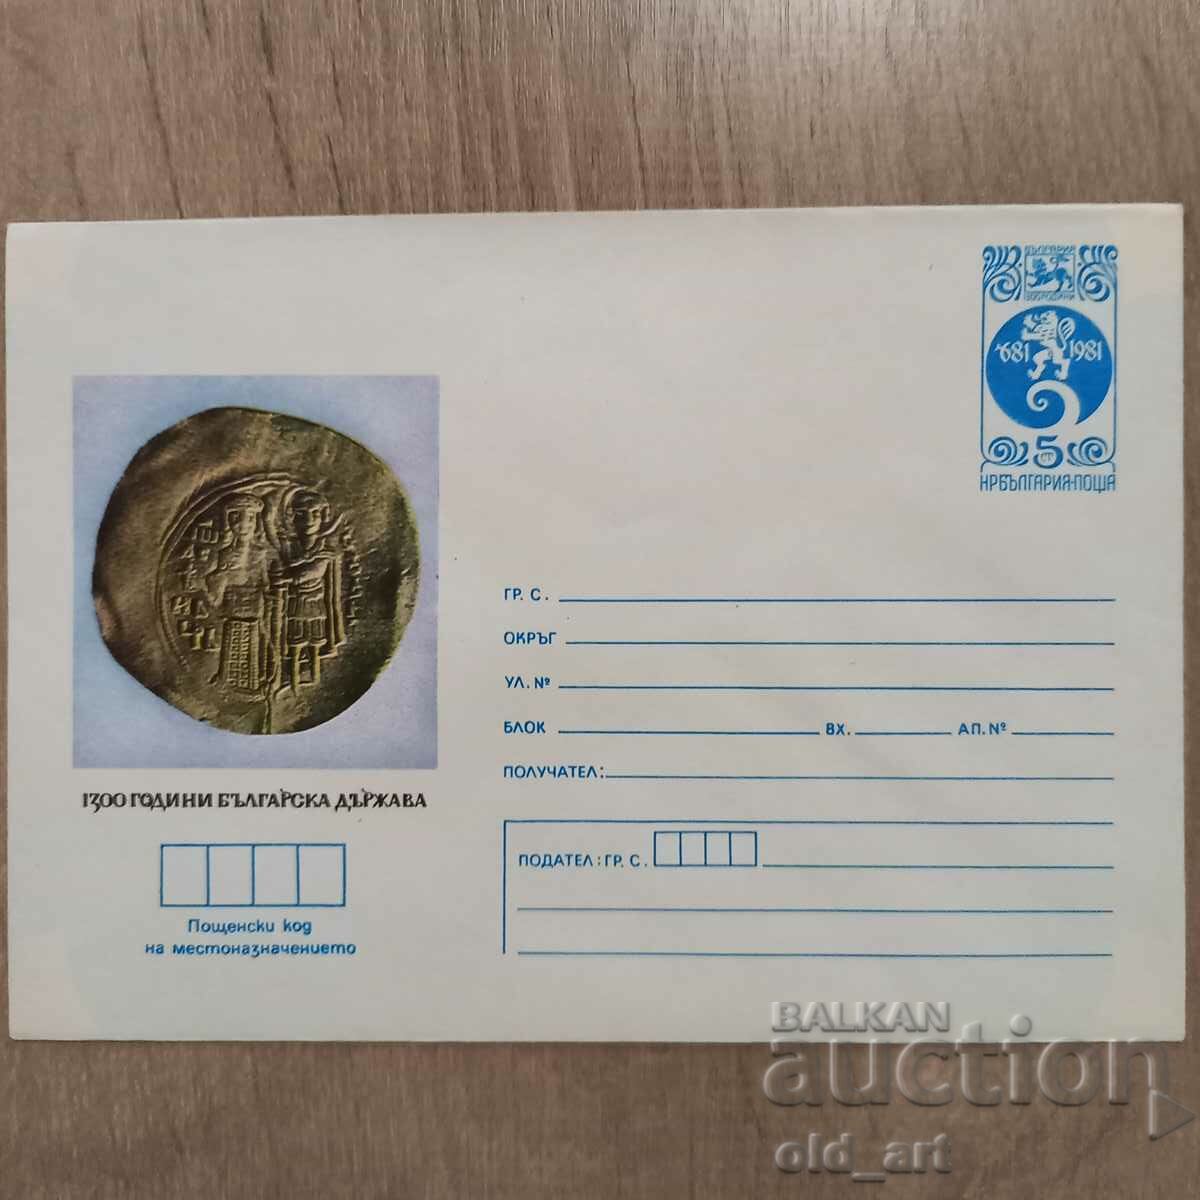 Postal envelope - 1300. Bulgarian state